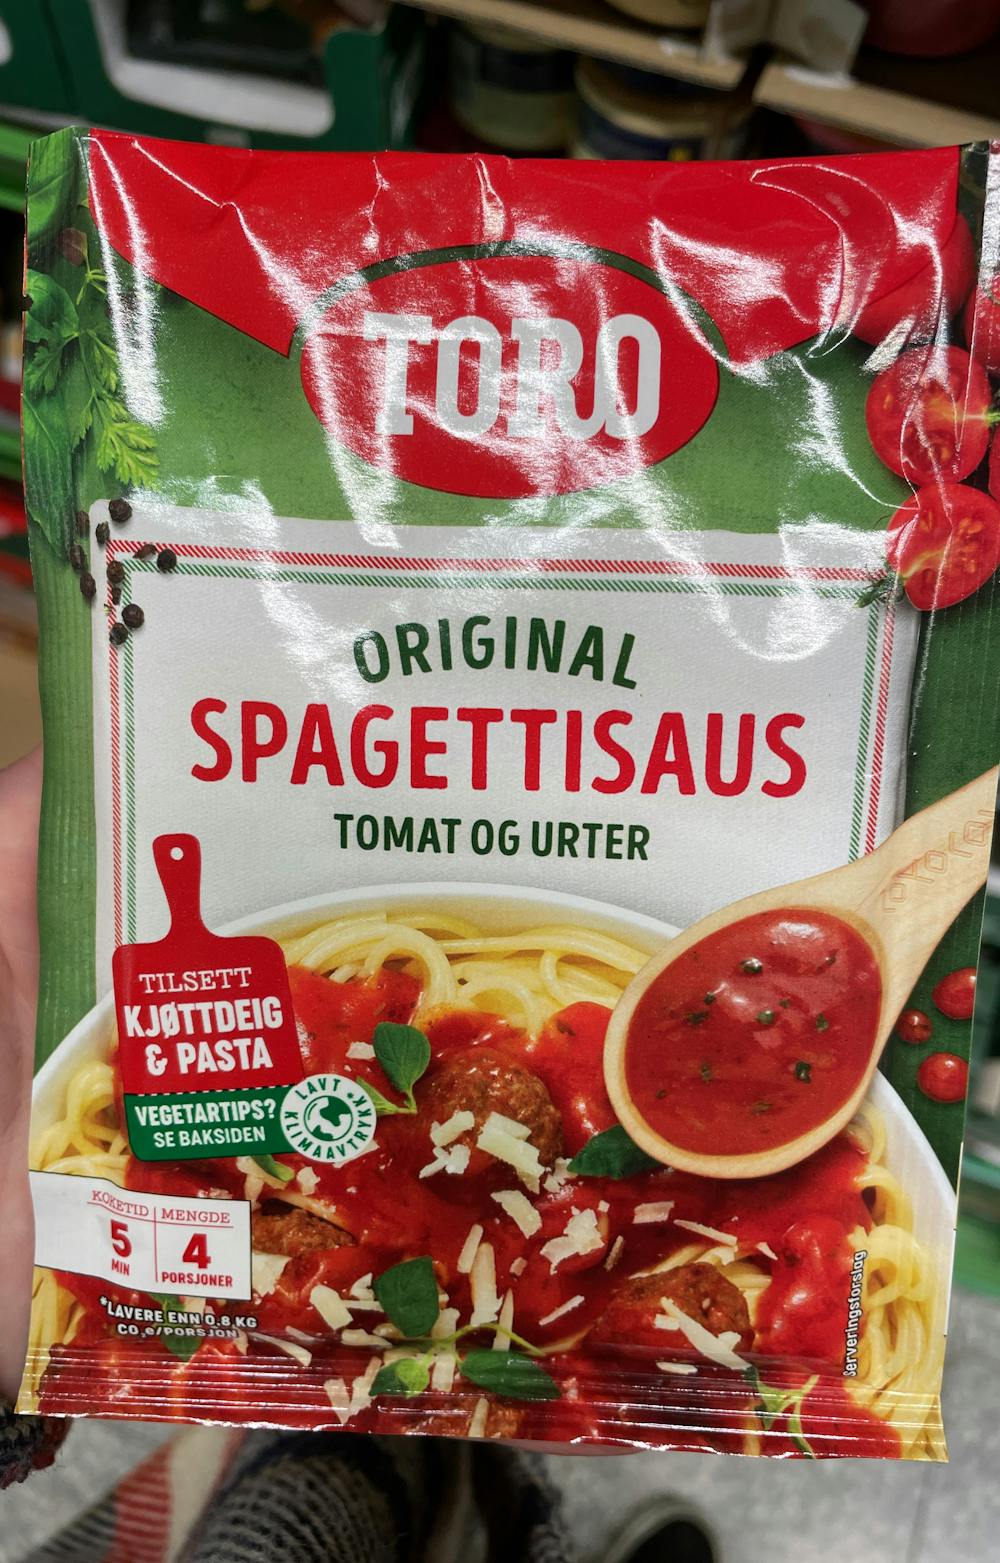 Spaghettisaus tomat og urter, Toro